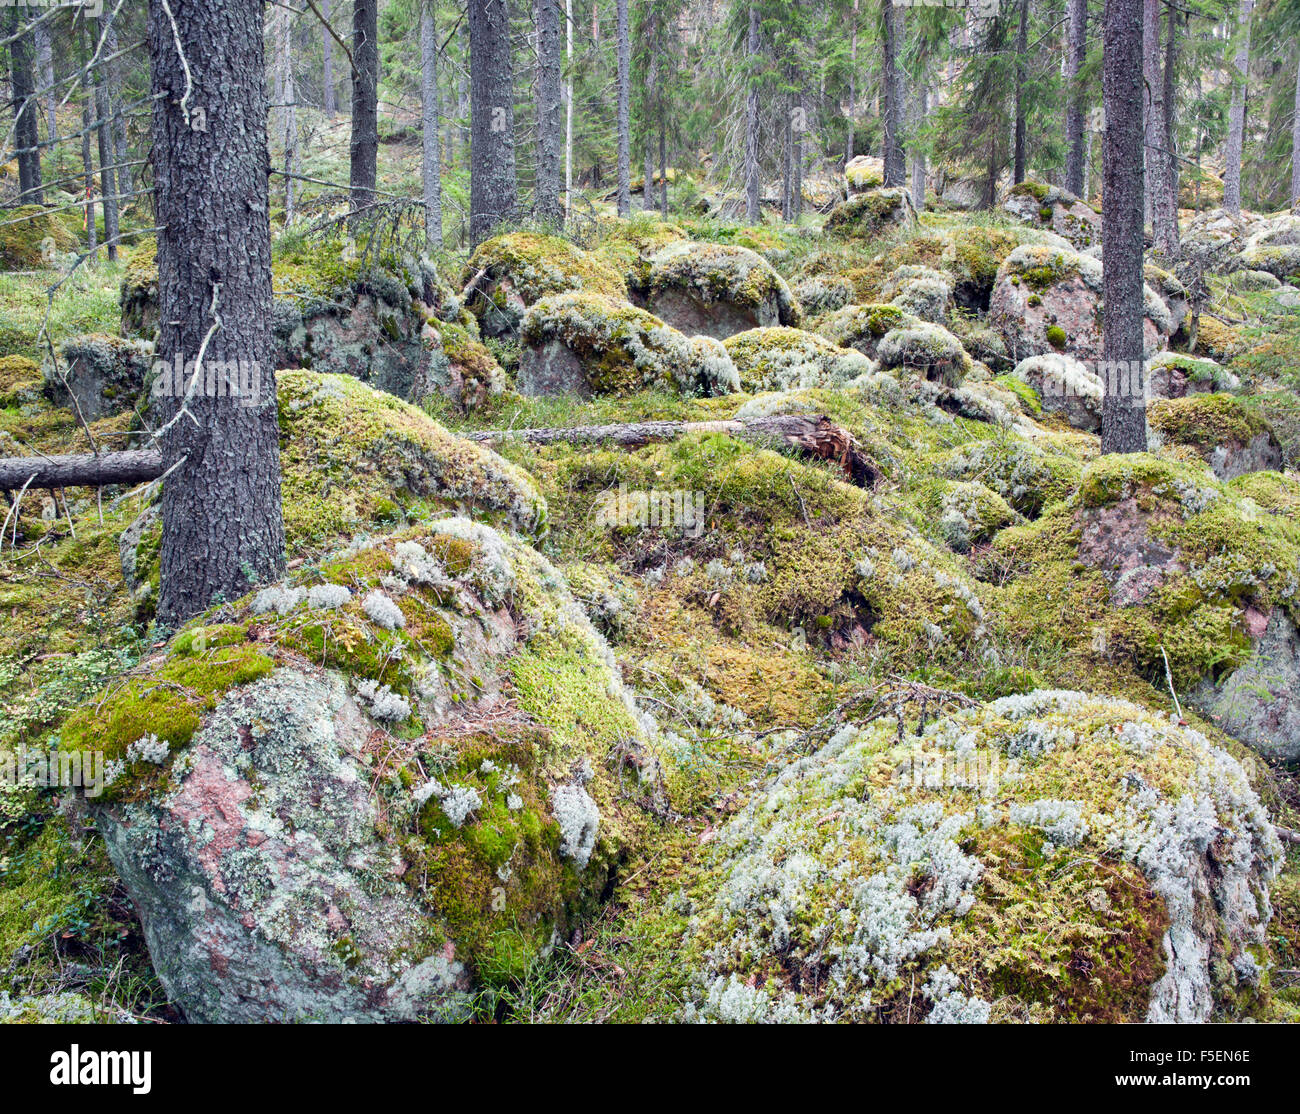 Forest interior, Varmland Sweden Stock Photo